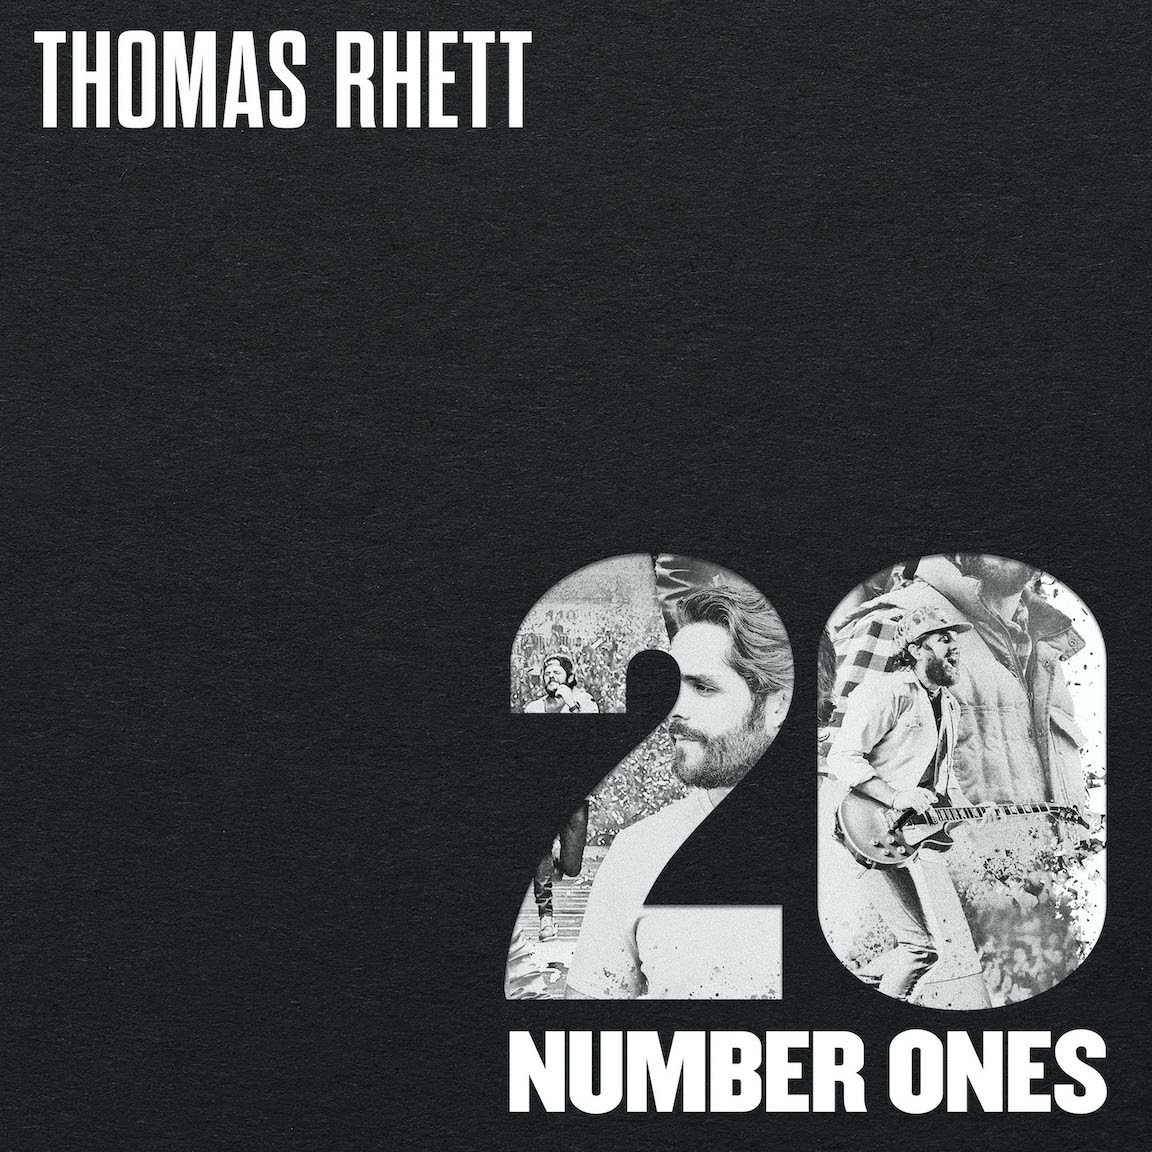 Thomas Rhett cover image courtesy of The Valory Music Co. // Big Machine Label Group